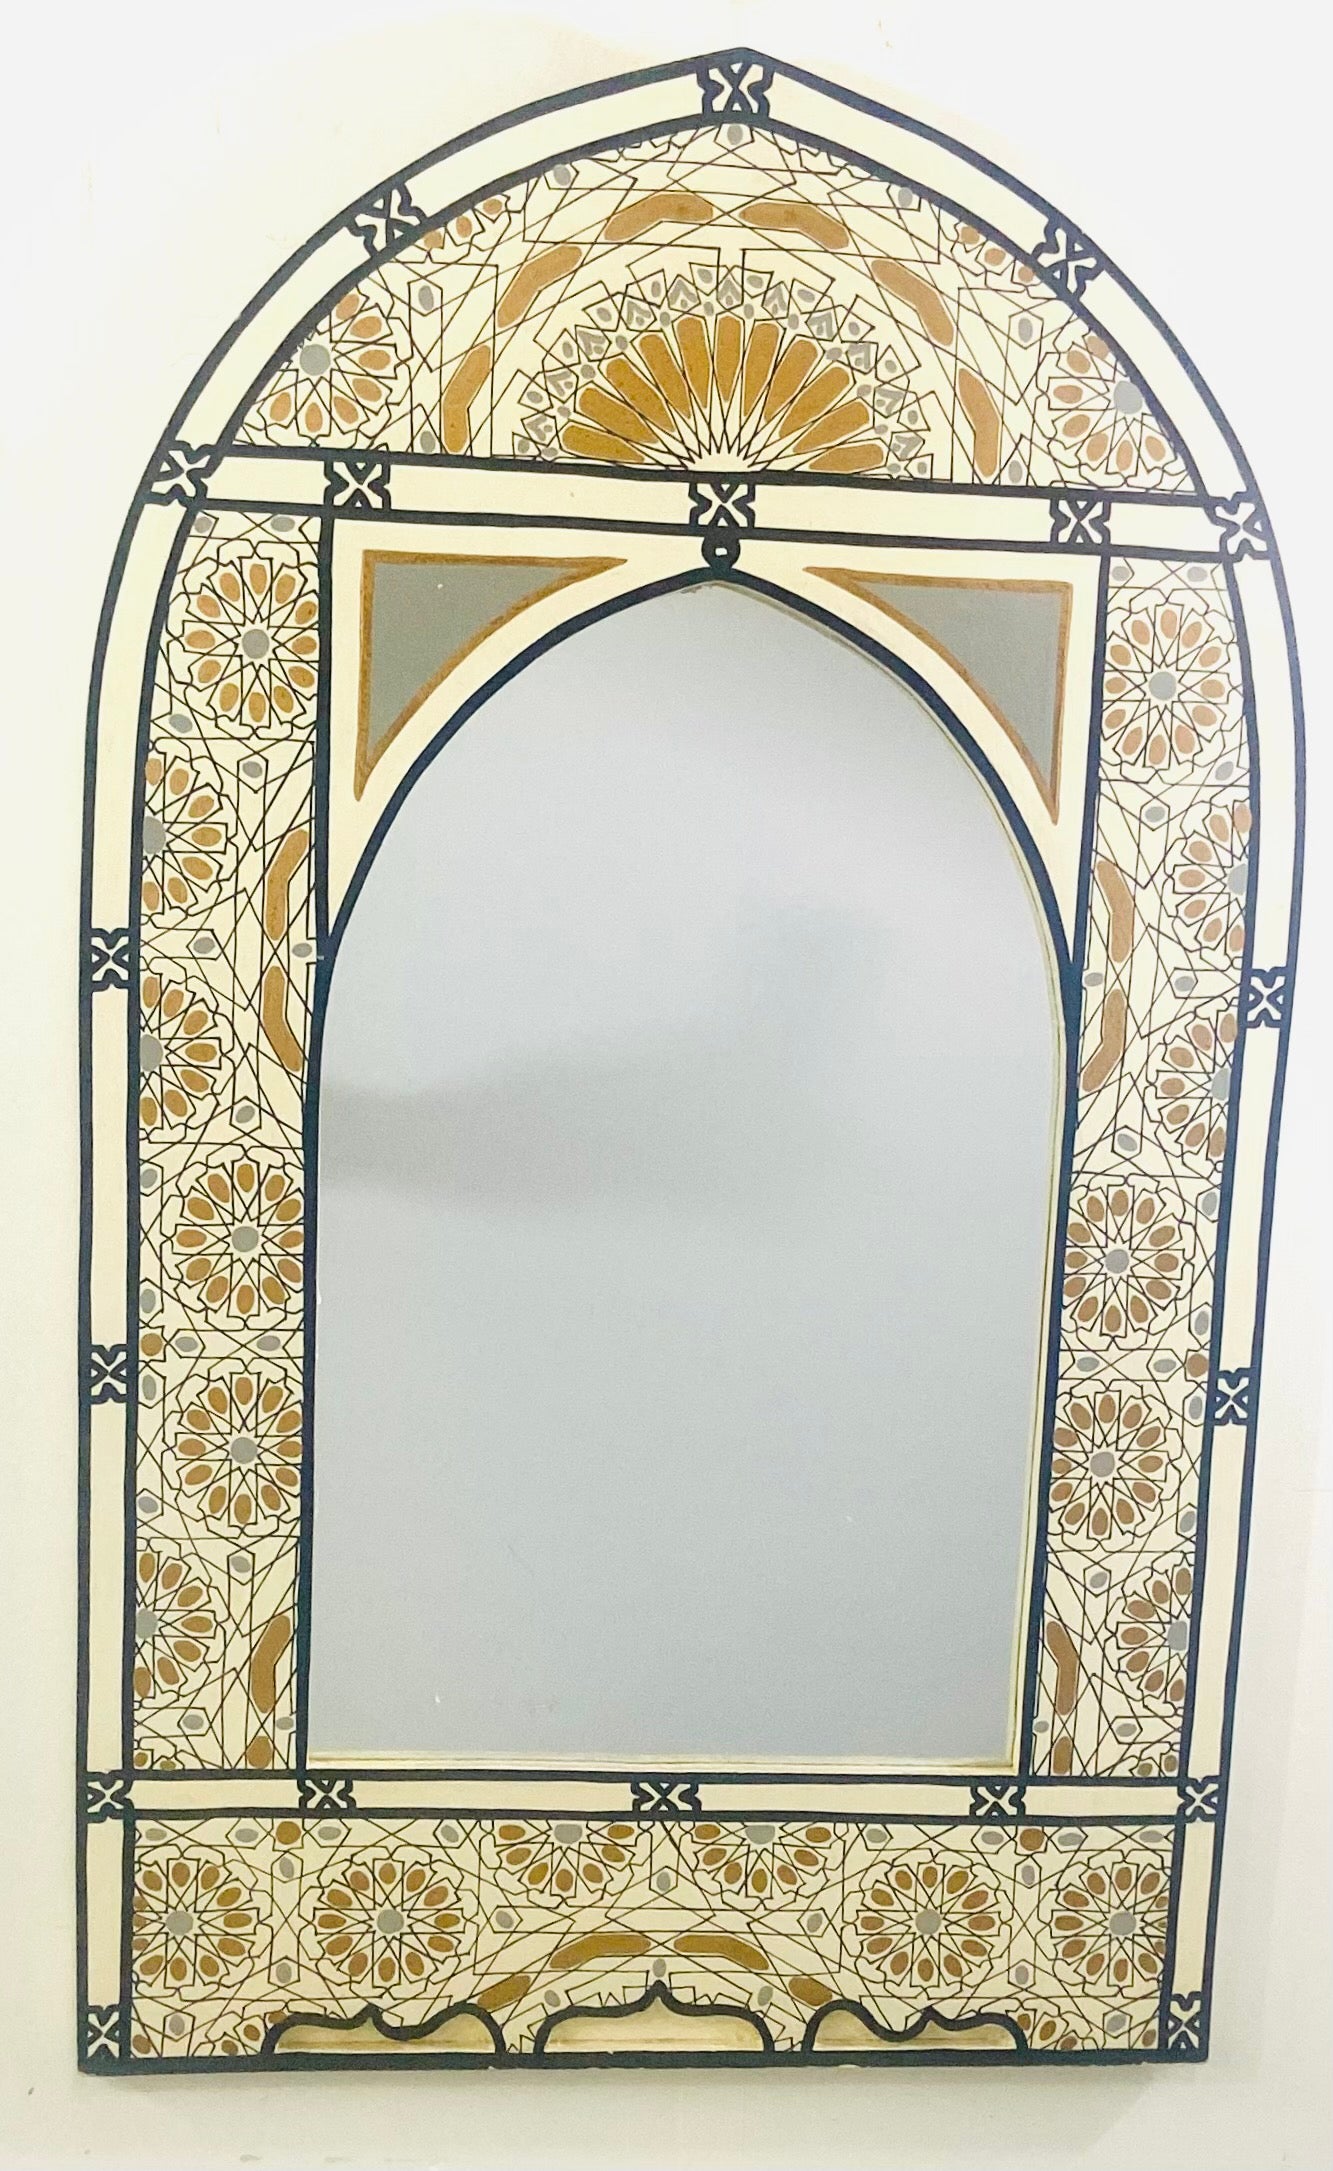 Un beau miroir mural, de table ou de vanité de style bohème marocain. Le cadre du miroir est sculpté à la main en forme d'arc mauresque intemporel et peint à la main de manière artistique pour présenter des motifs géométriques mauresques complexes